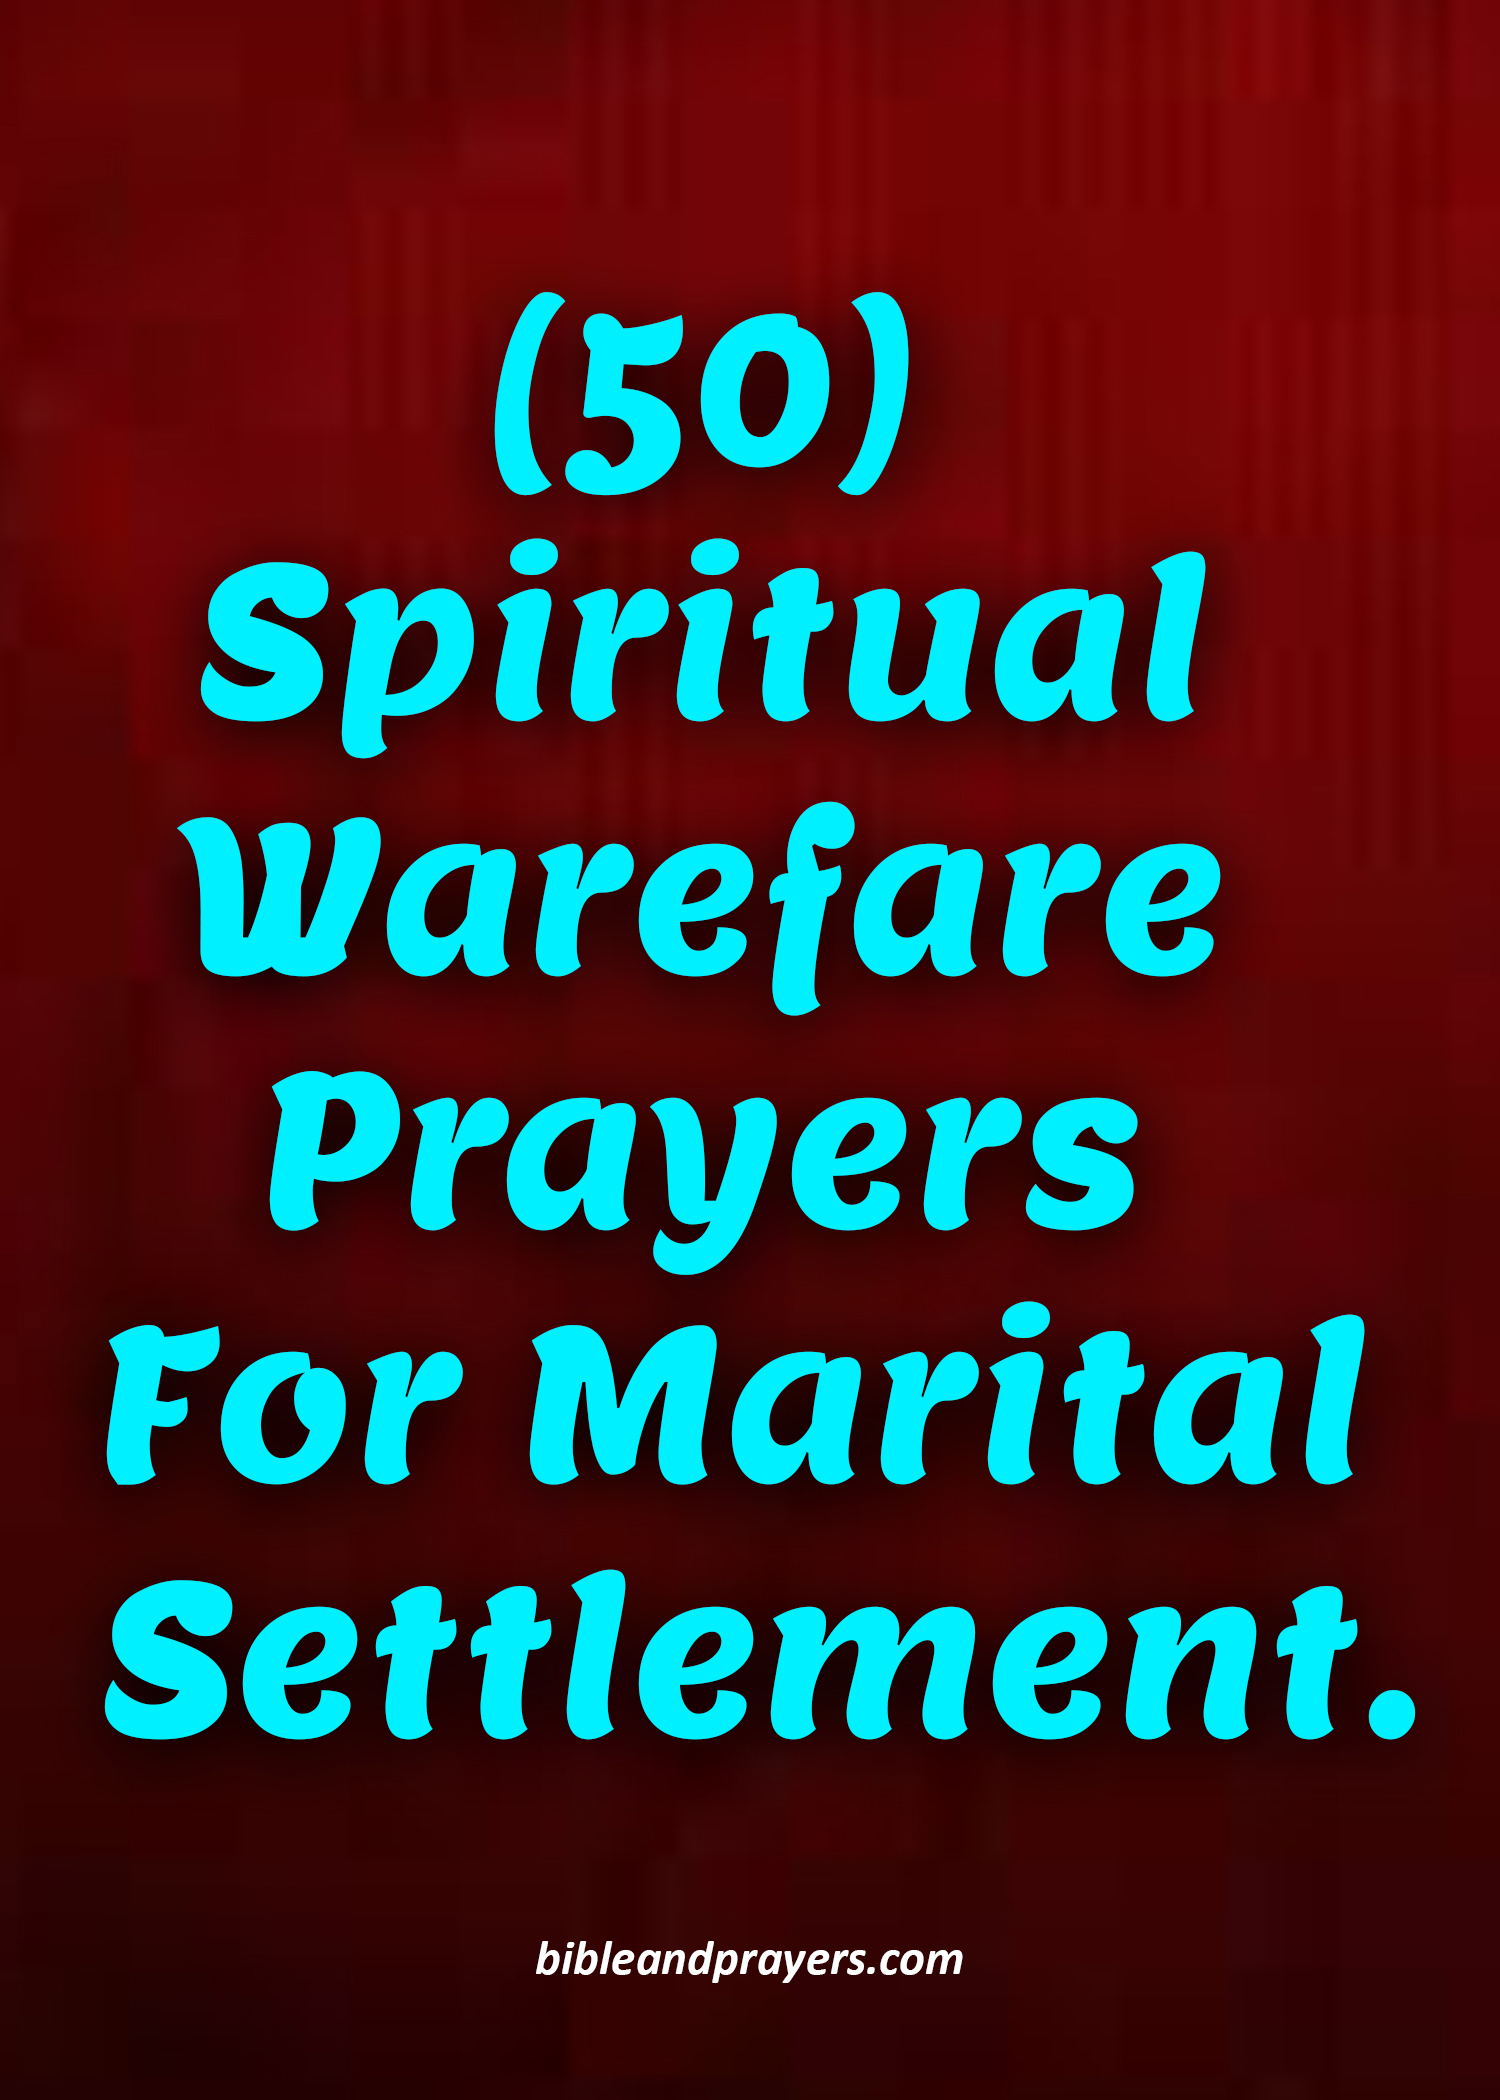 50 Spiritual Warfare Prayers For Marital Settlement